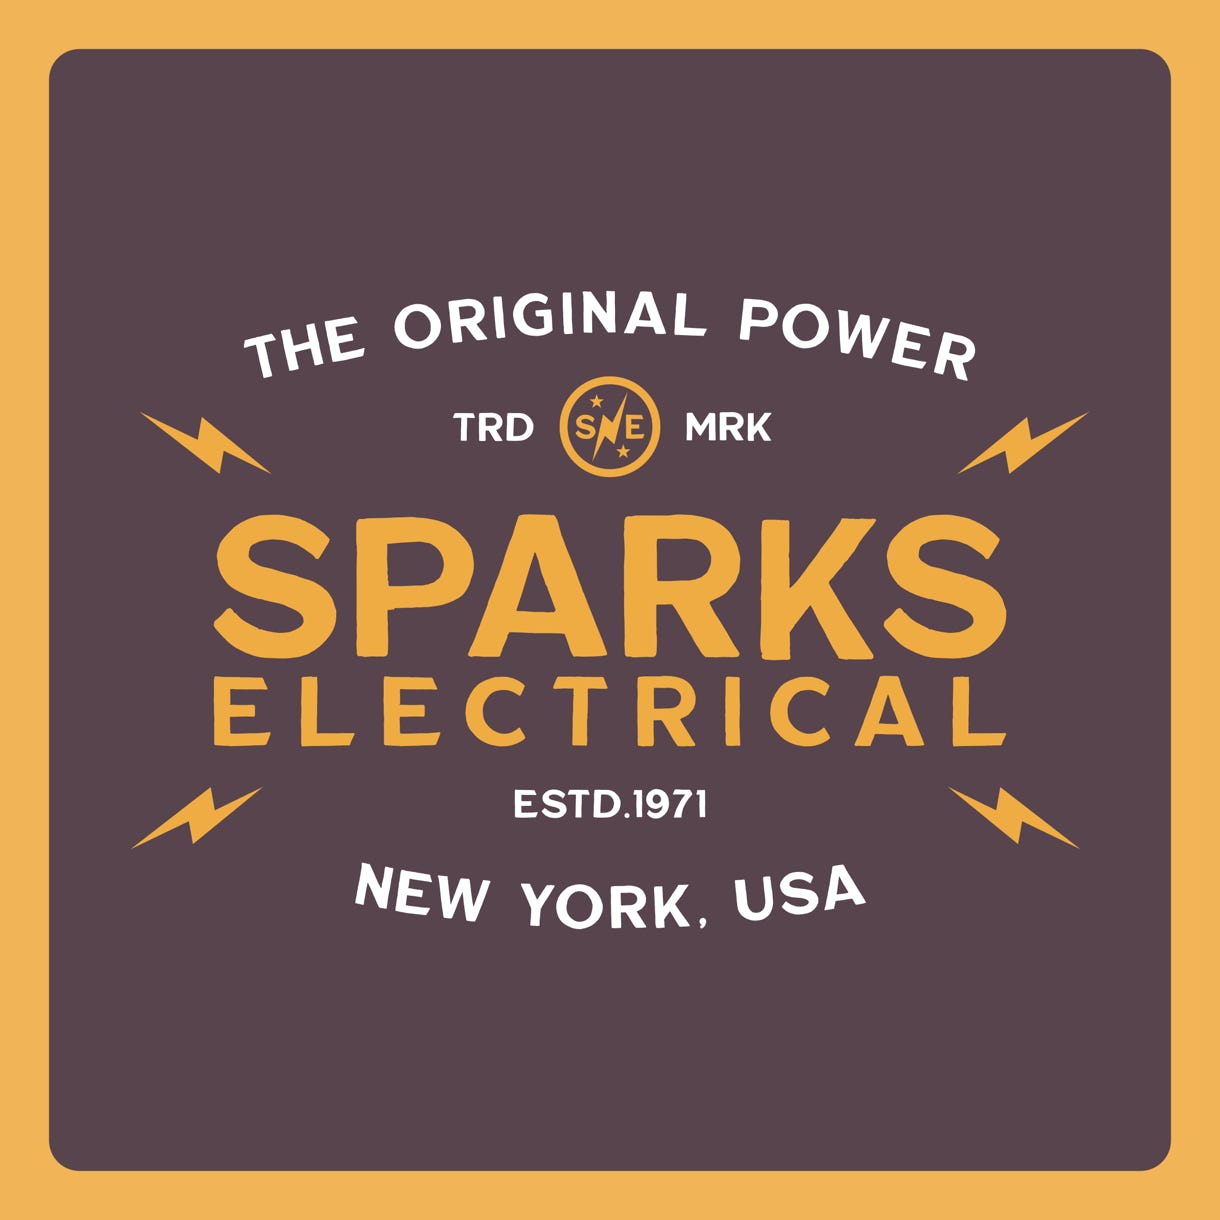 Spark Electrical - The Original Power Design